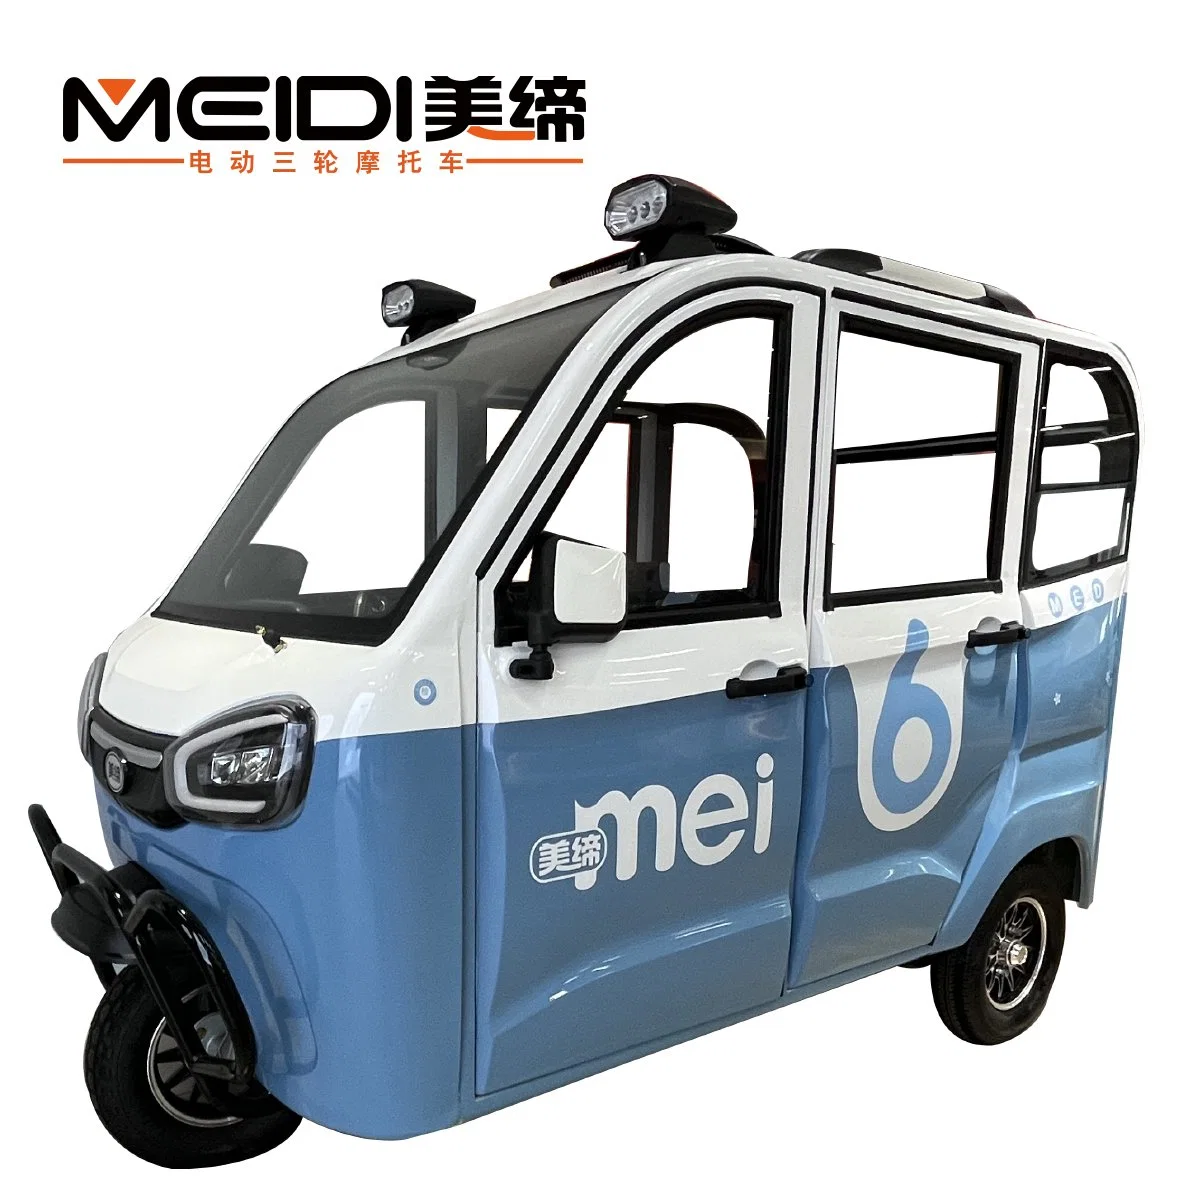 Meidi 1 200 W 1 500 W 1 800 W Solar Auto Rickshaw Auto fonctionnant à piles Tricycle électrique fermé